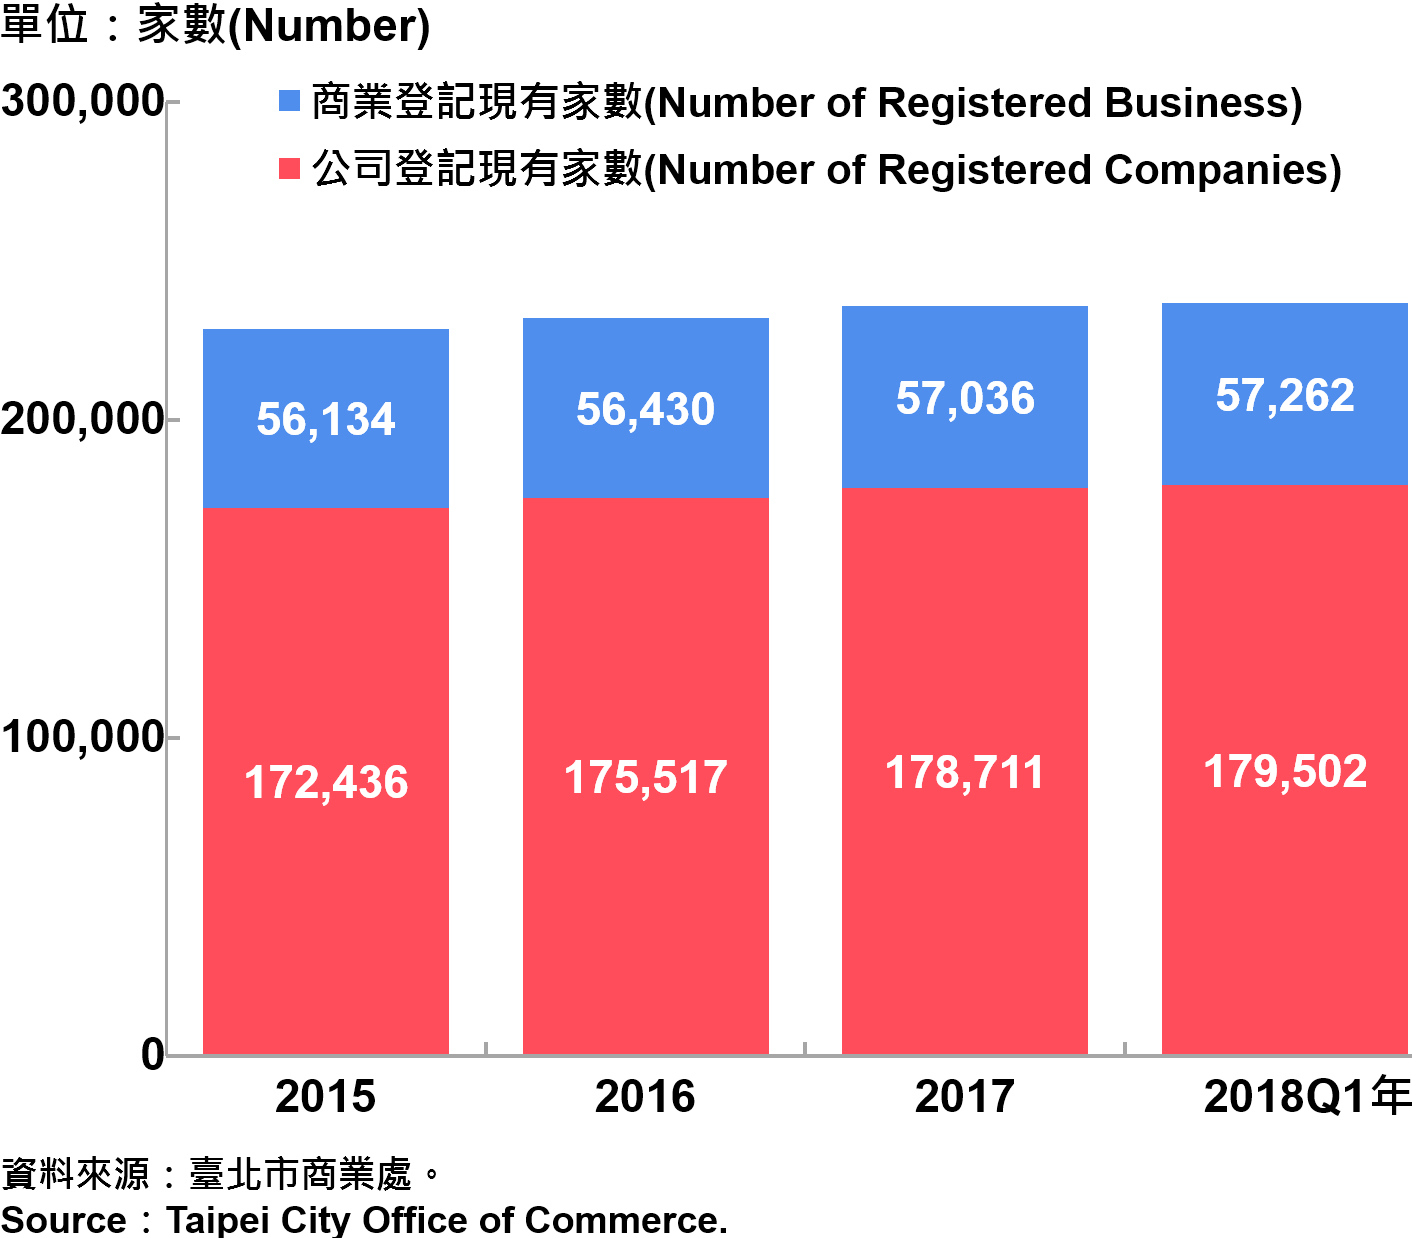 臺北市工商登記—2018Q1 Industry & Commerce Registration in Taipei—2018Q1